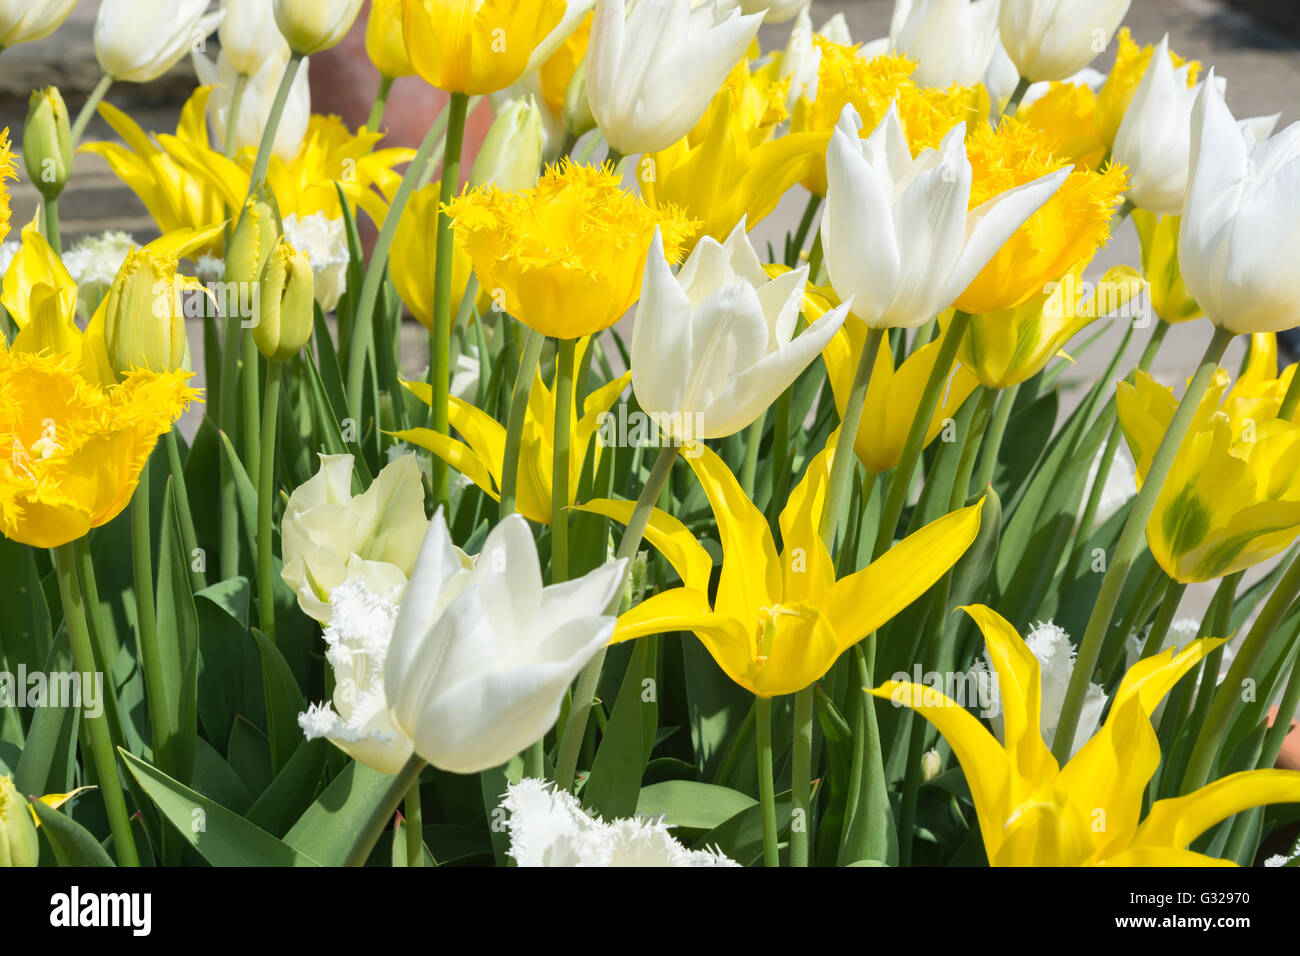 Tulips 'Hamilton' (yellow fringe) 'West Point' (yellow no fringe) 'Honeymoon' (white fringe) & 'White Triumphator' Stock Photo